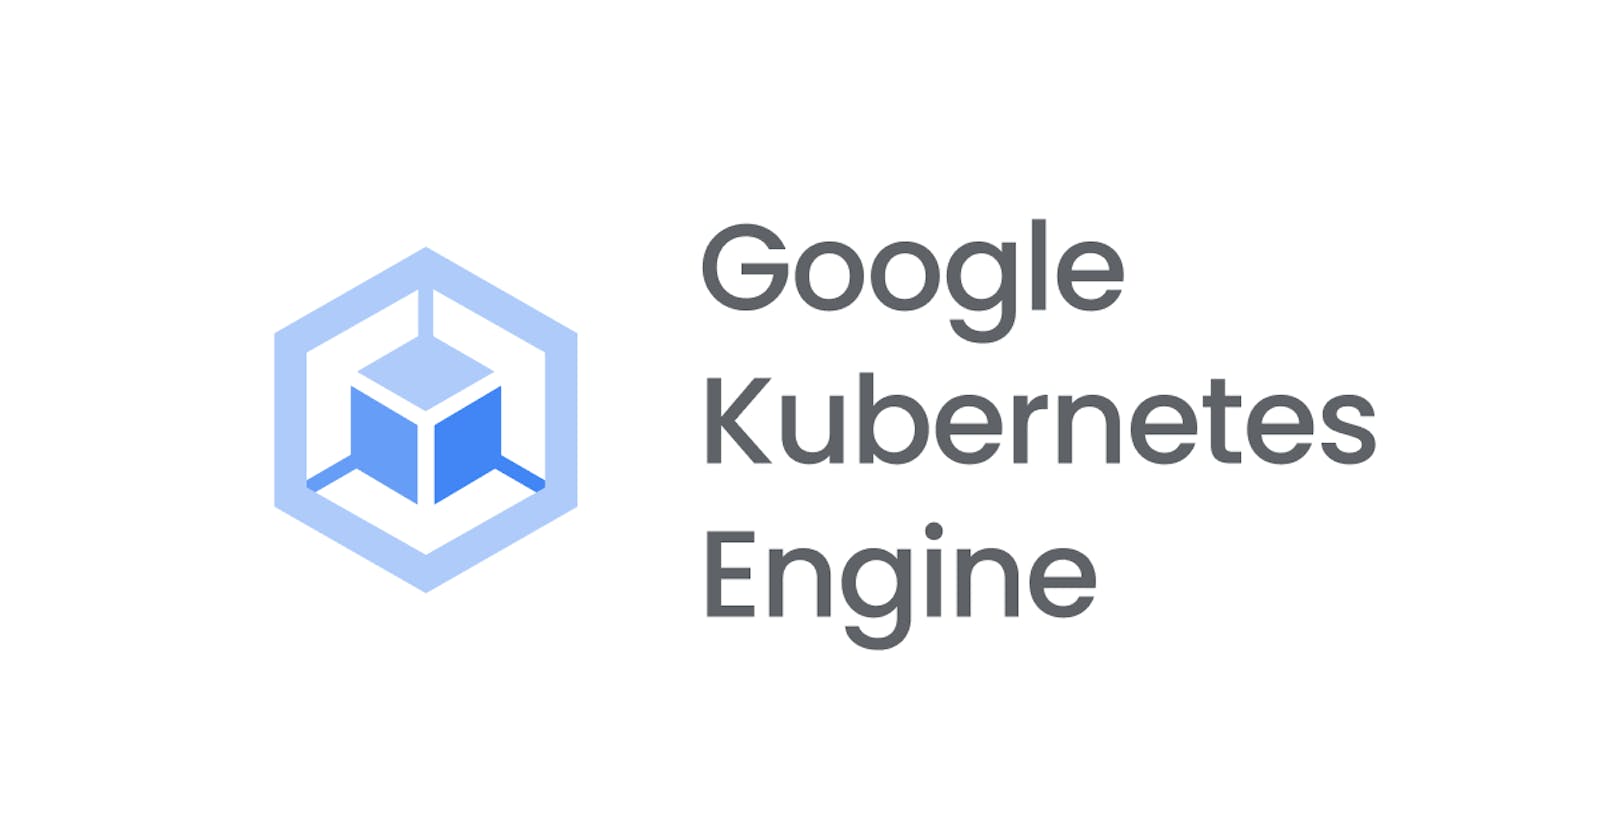 Working With GKE (Google kubernetes engine)